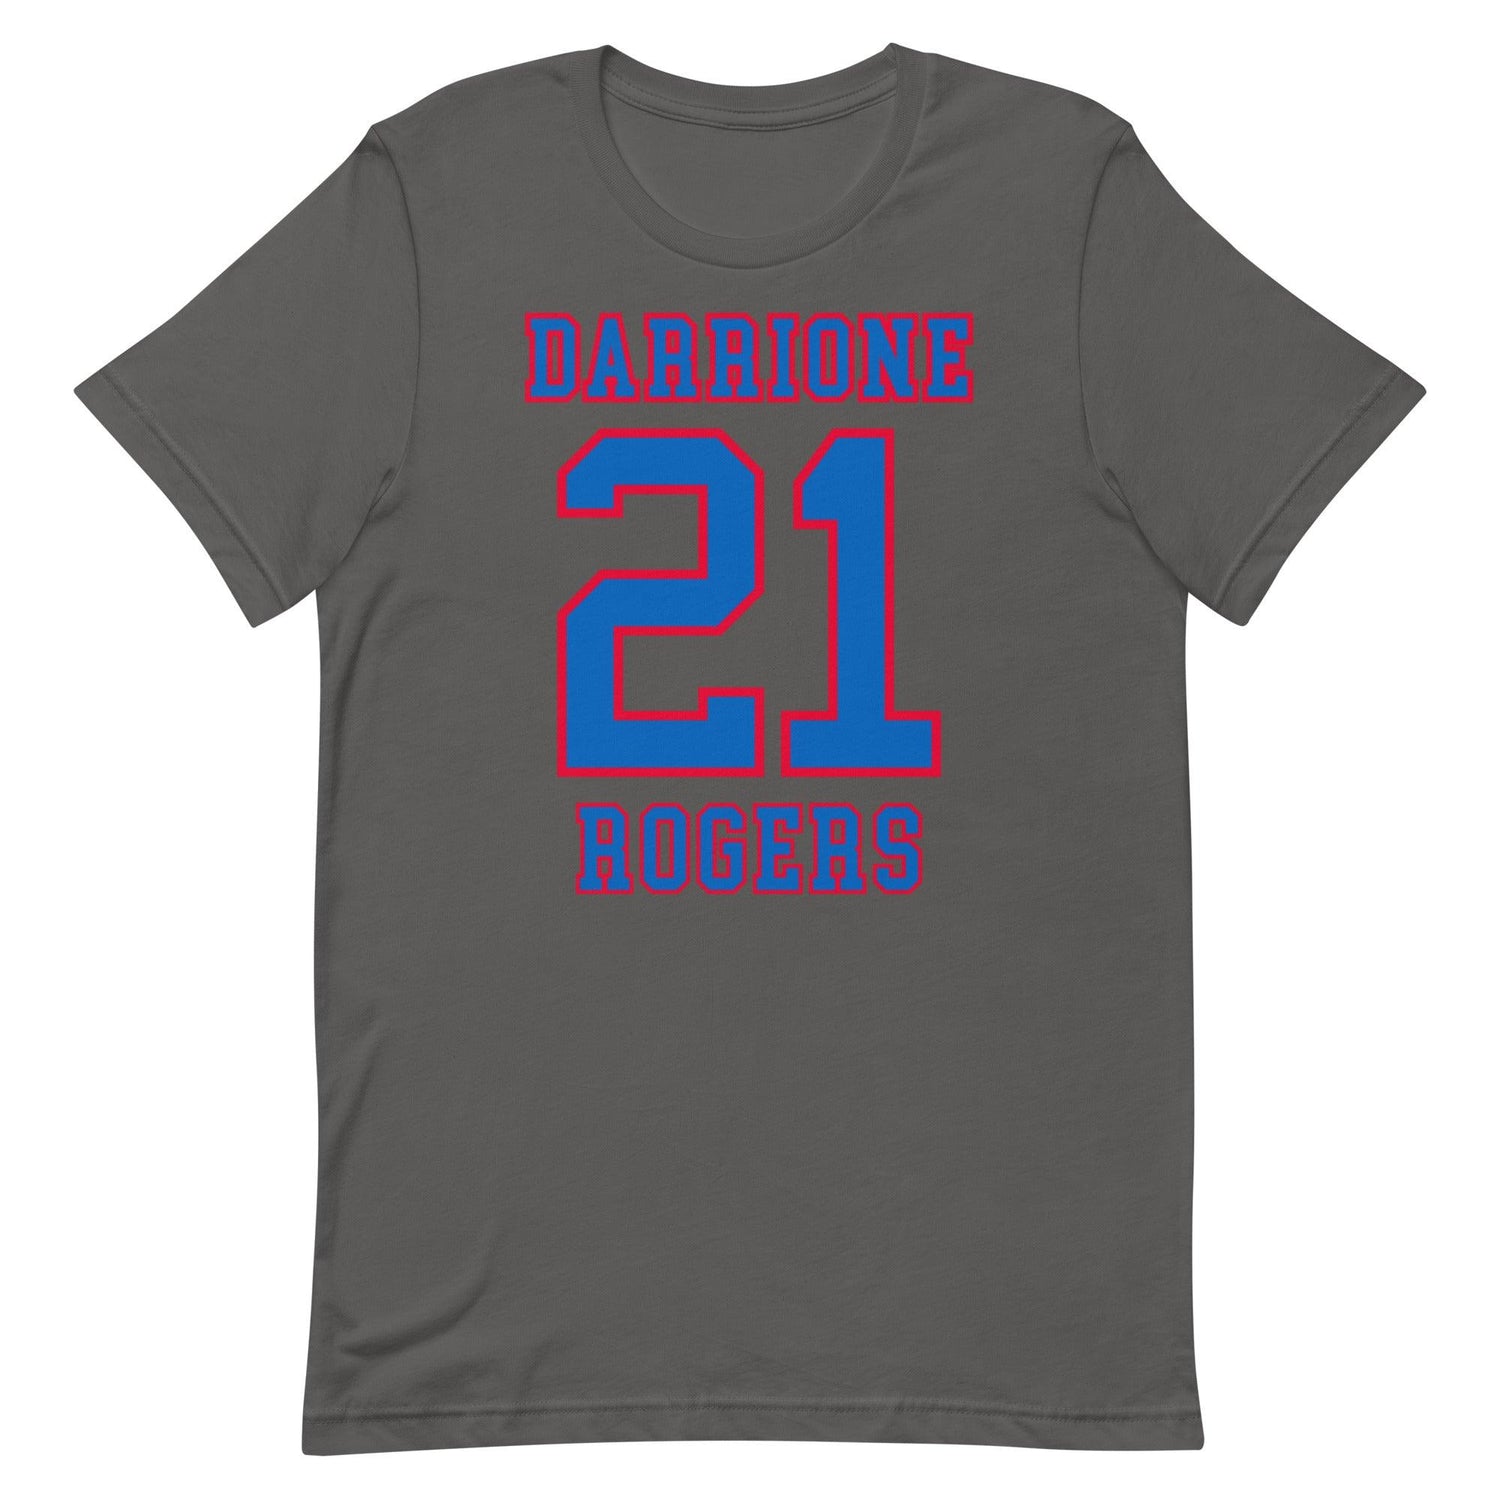 Darrione Rogers "Jersey" t-shirt - Fan Arch